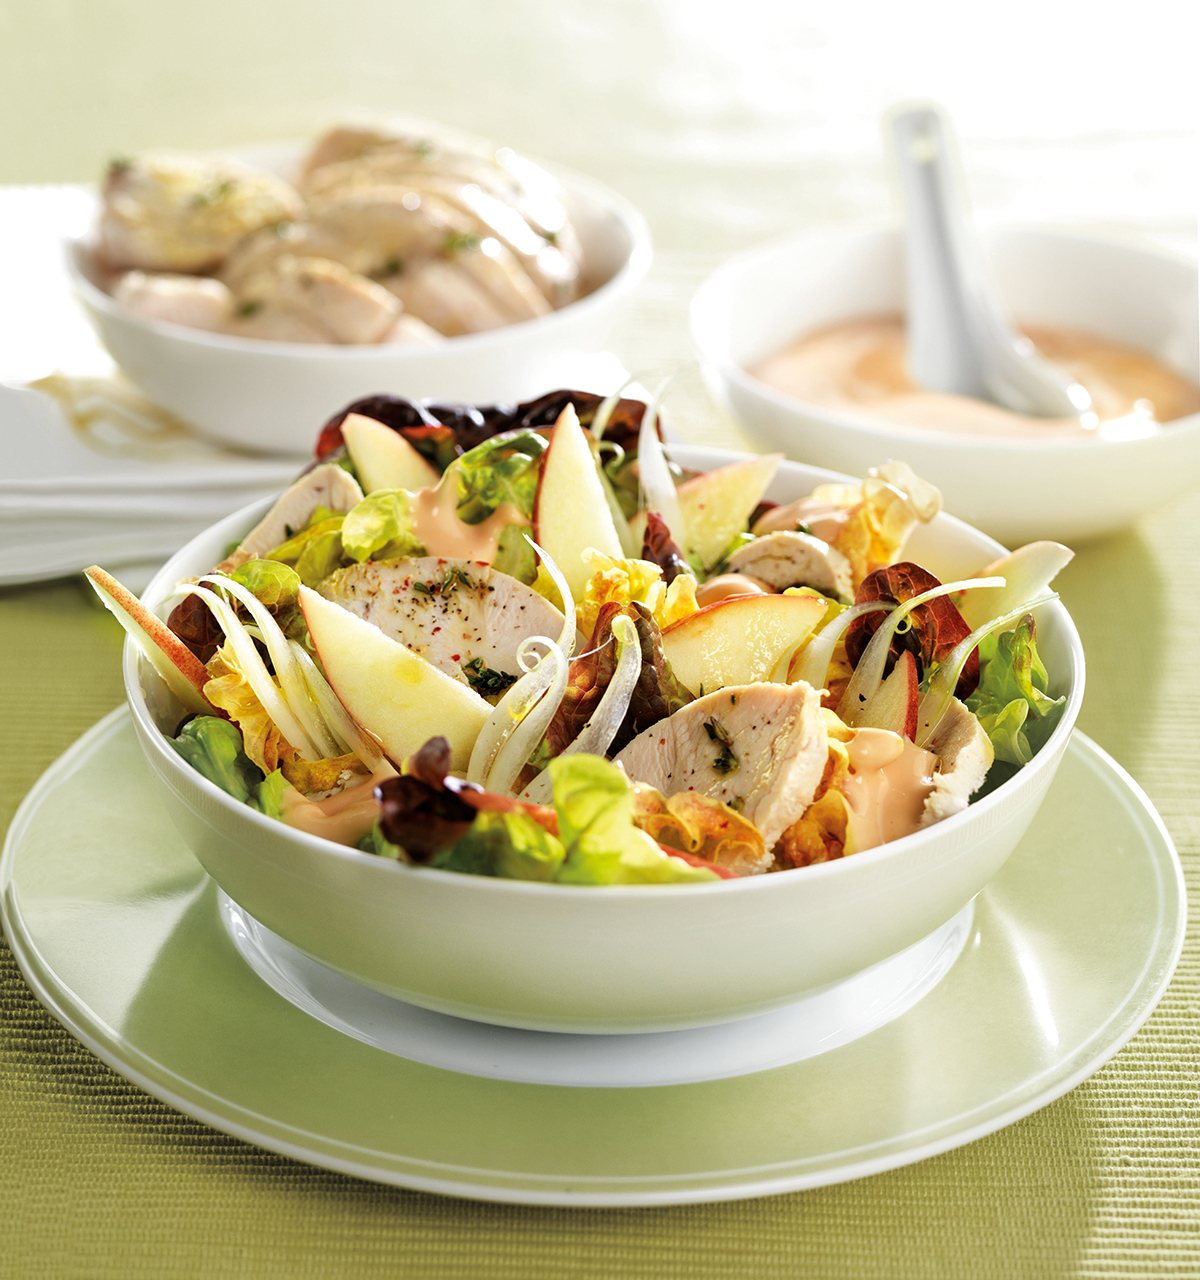 Recta de ensalada fácil y rápida de preparar de pollo con manzana y cebolleta.